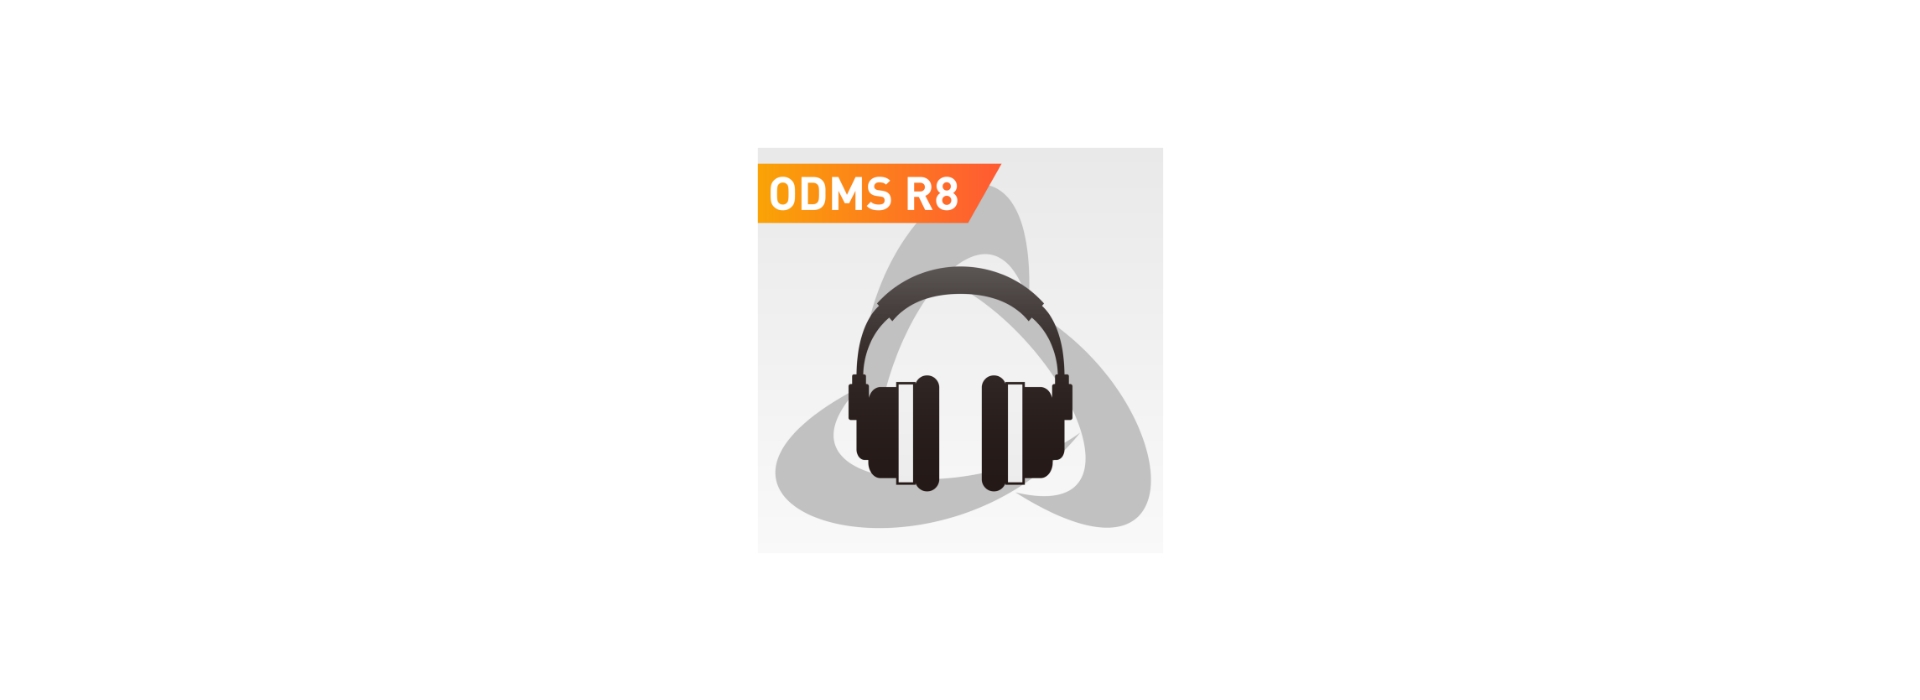 OM-SYSTEM ODMS-R8 DIKTAT-STUTTGART 014